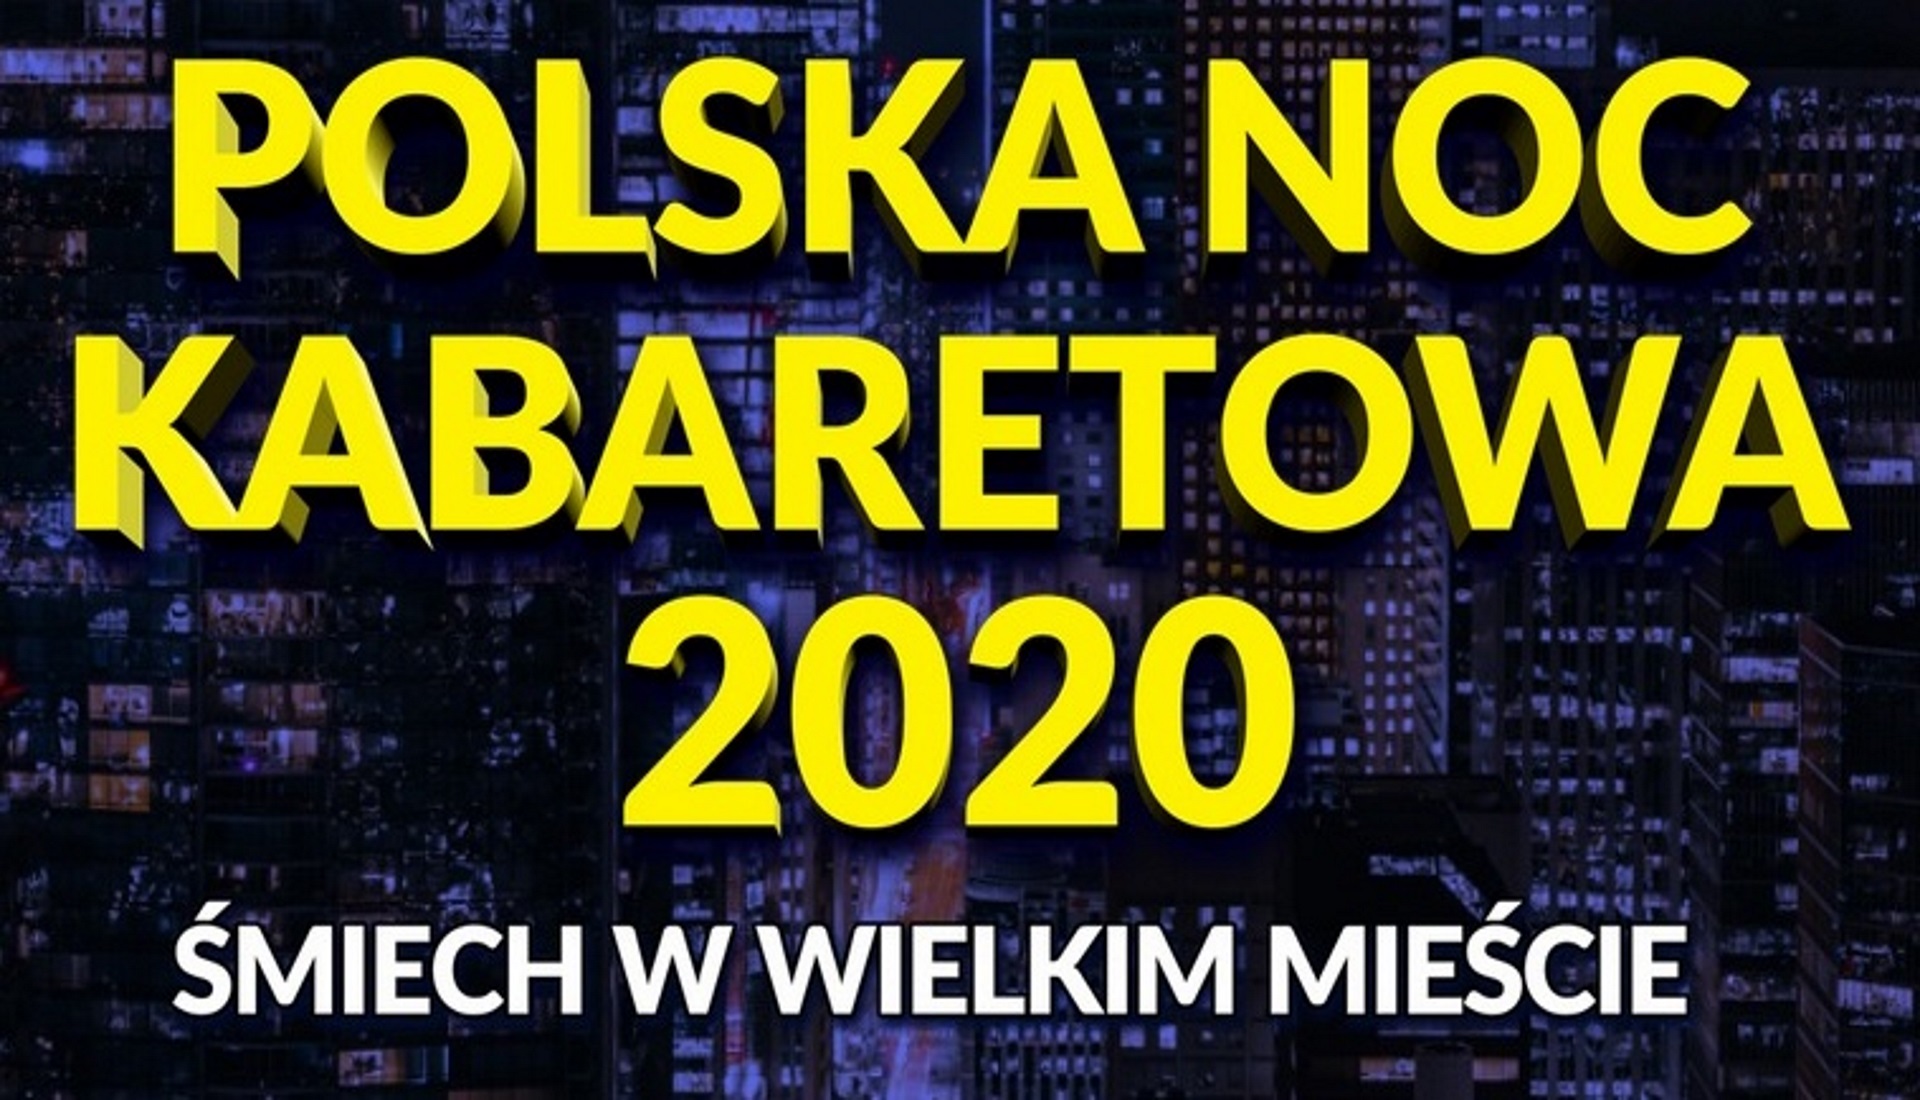 Plakat graficzny zapraszający do Olsztyna na Polską Noc Kabaretową "Śmiech w Wielkim Mieście" - Olsztyn 2020. Na plakacie napisy na tle zdjęcia miasta nocą.